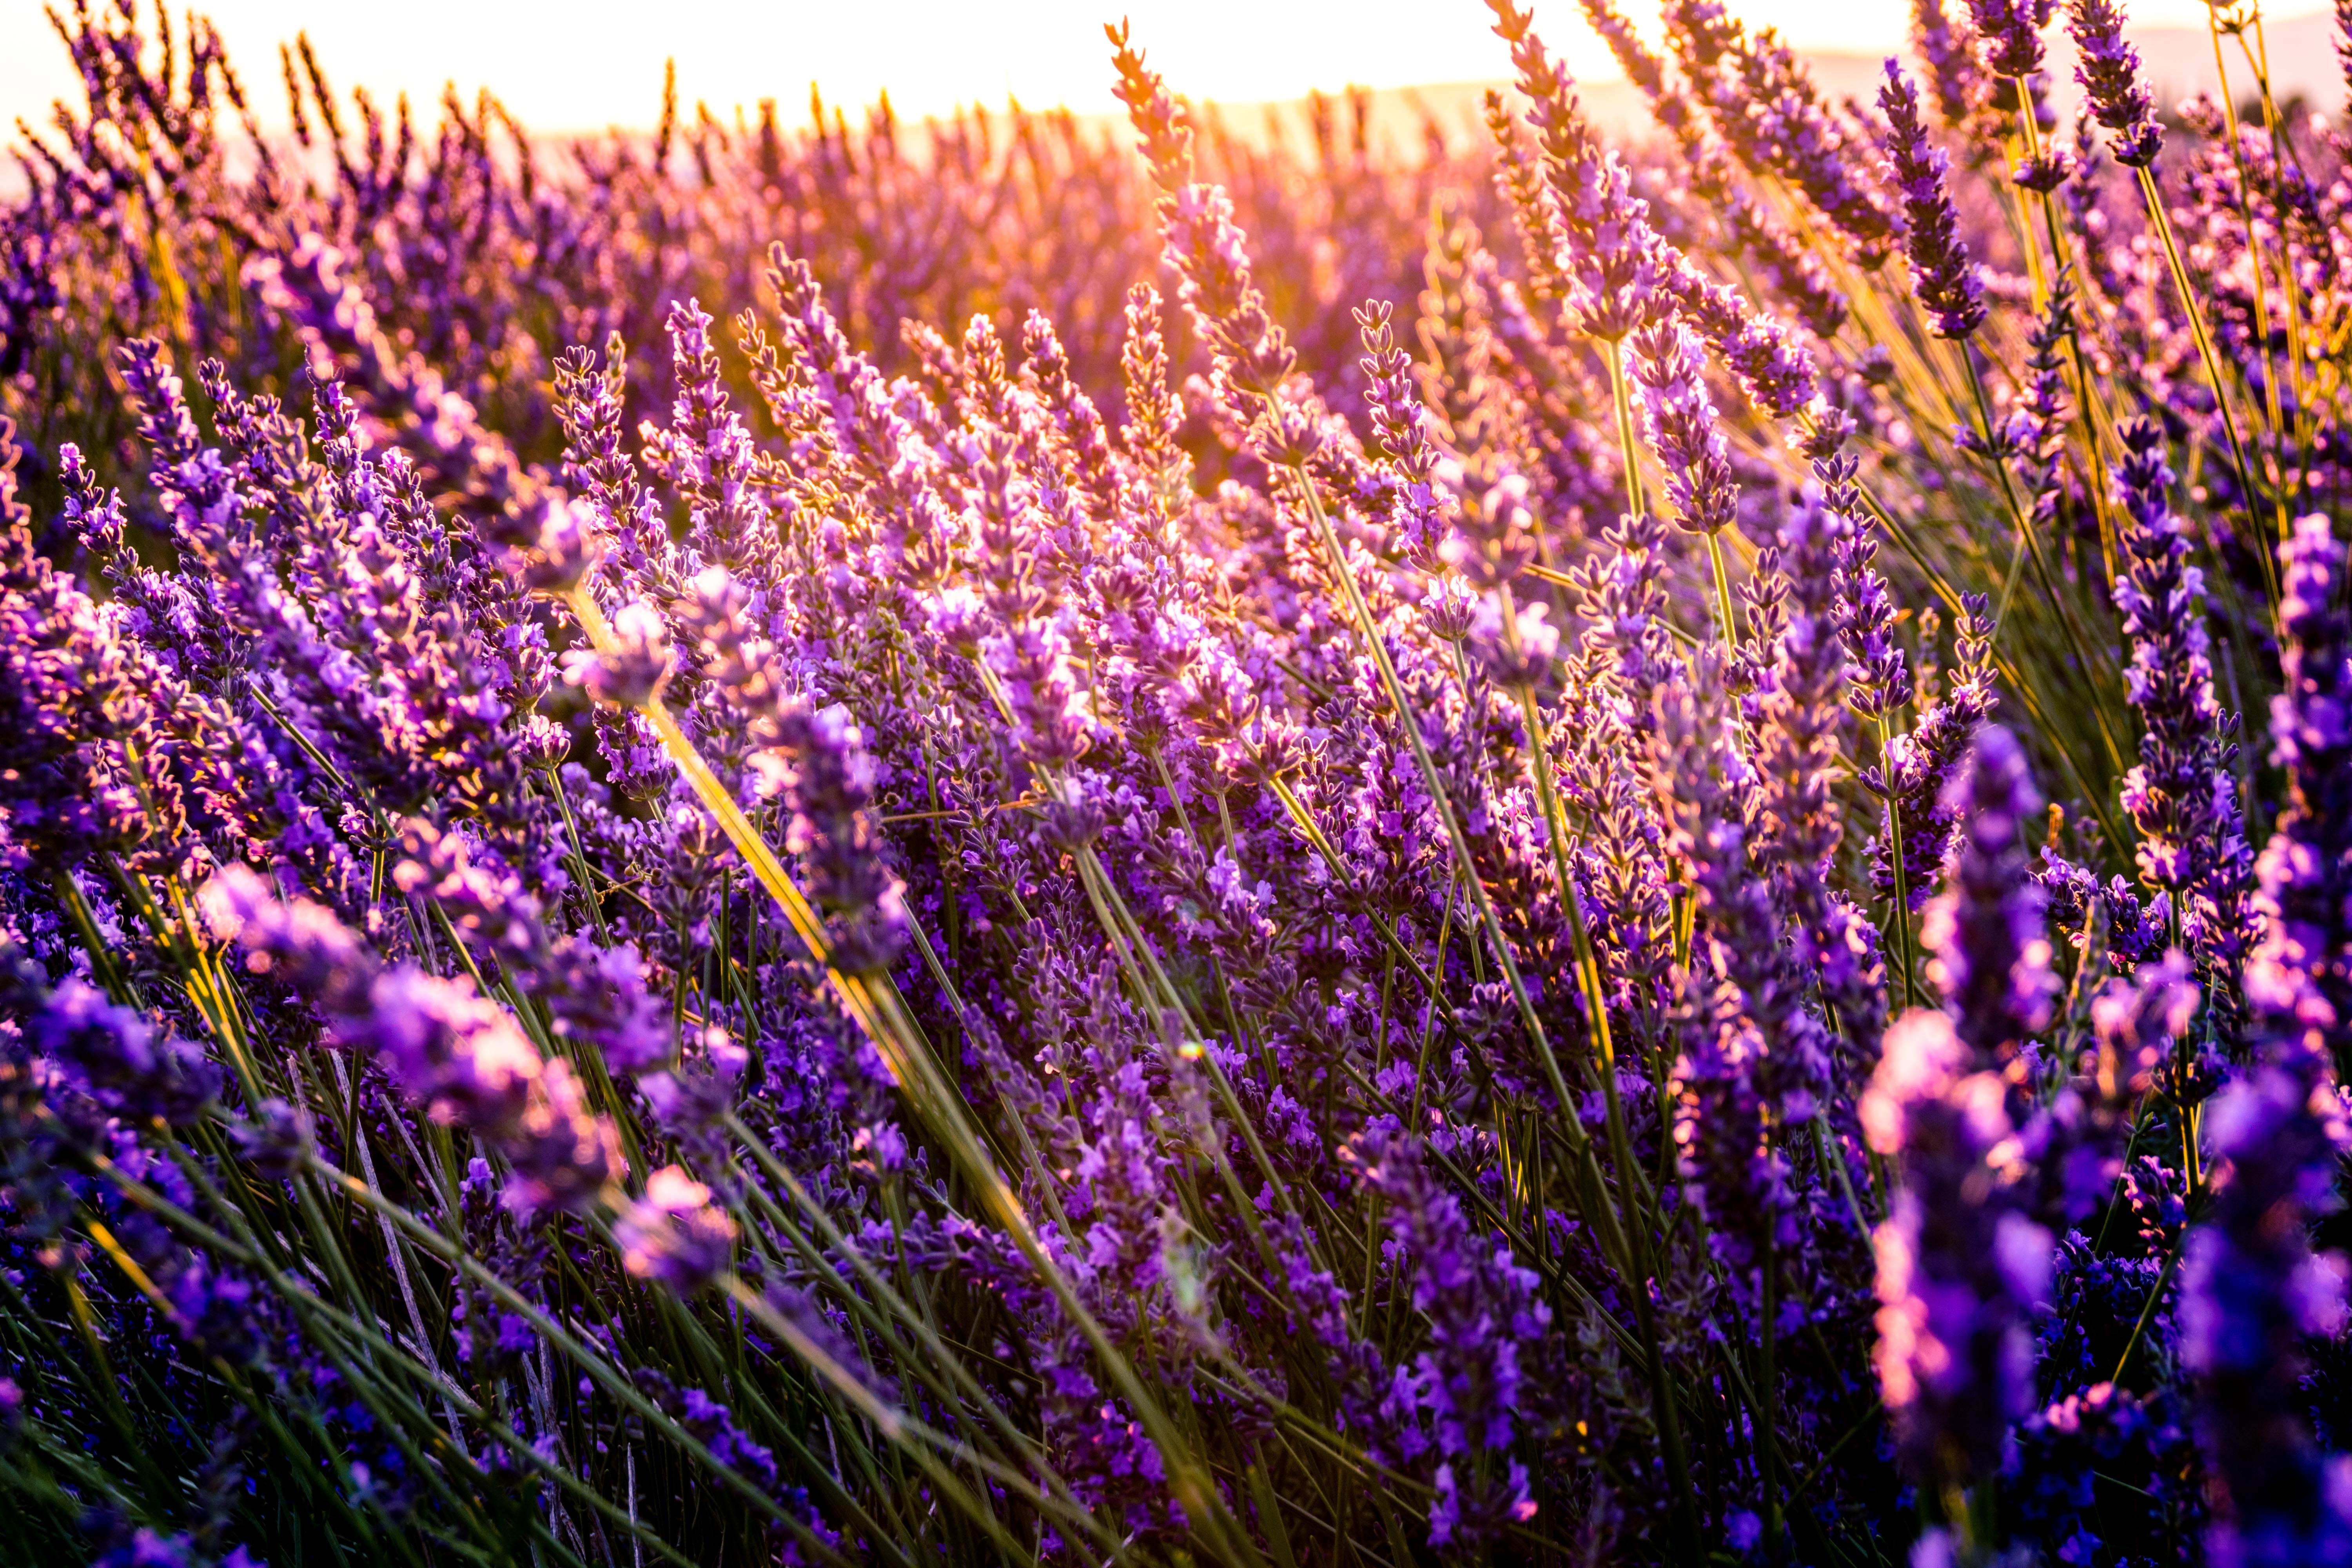 Обои пурпурные цветы солнечный свет обои лаванда - бесплатные картинки на Fonwall